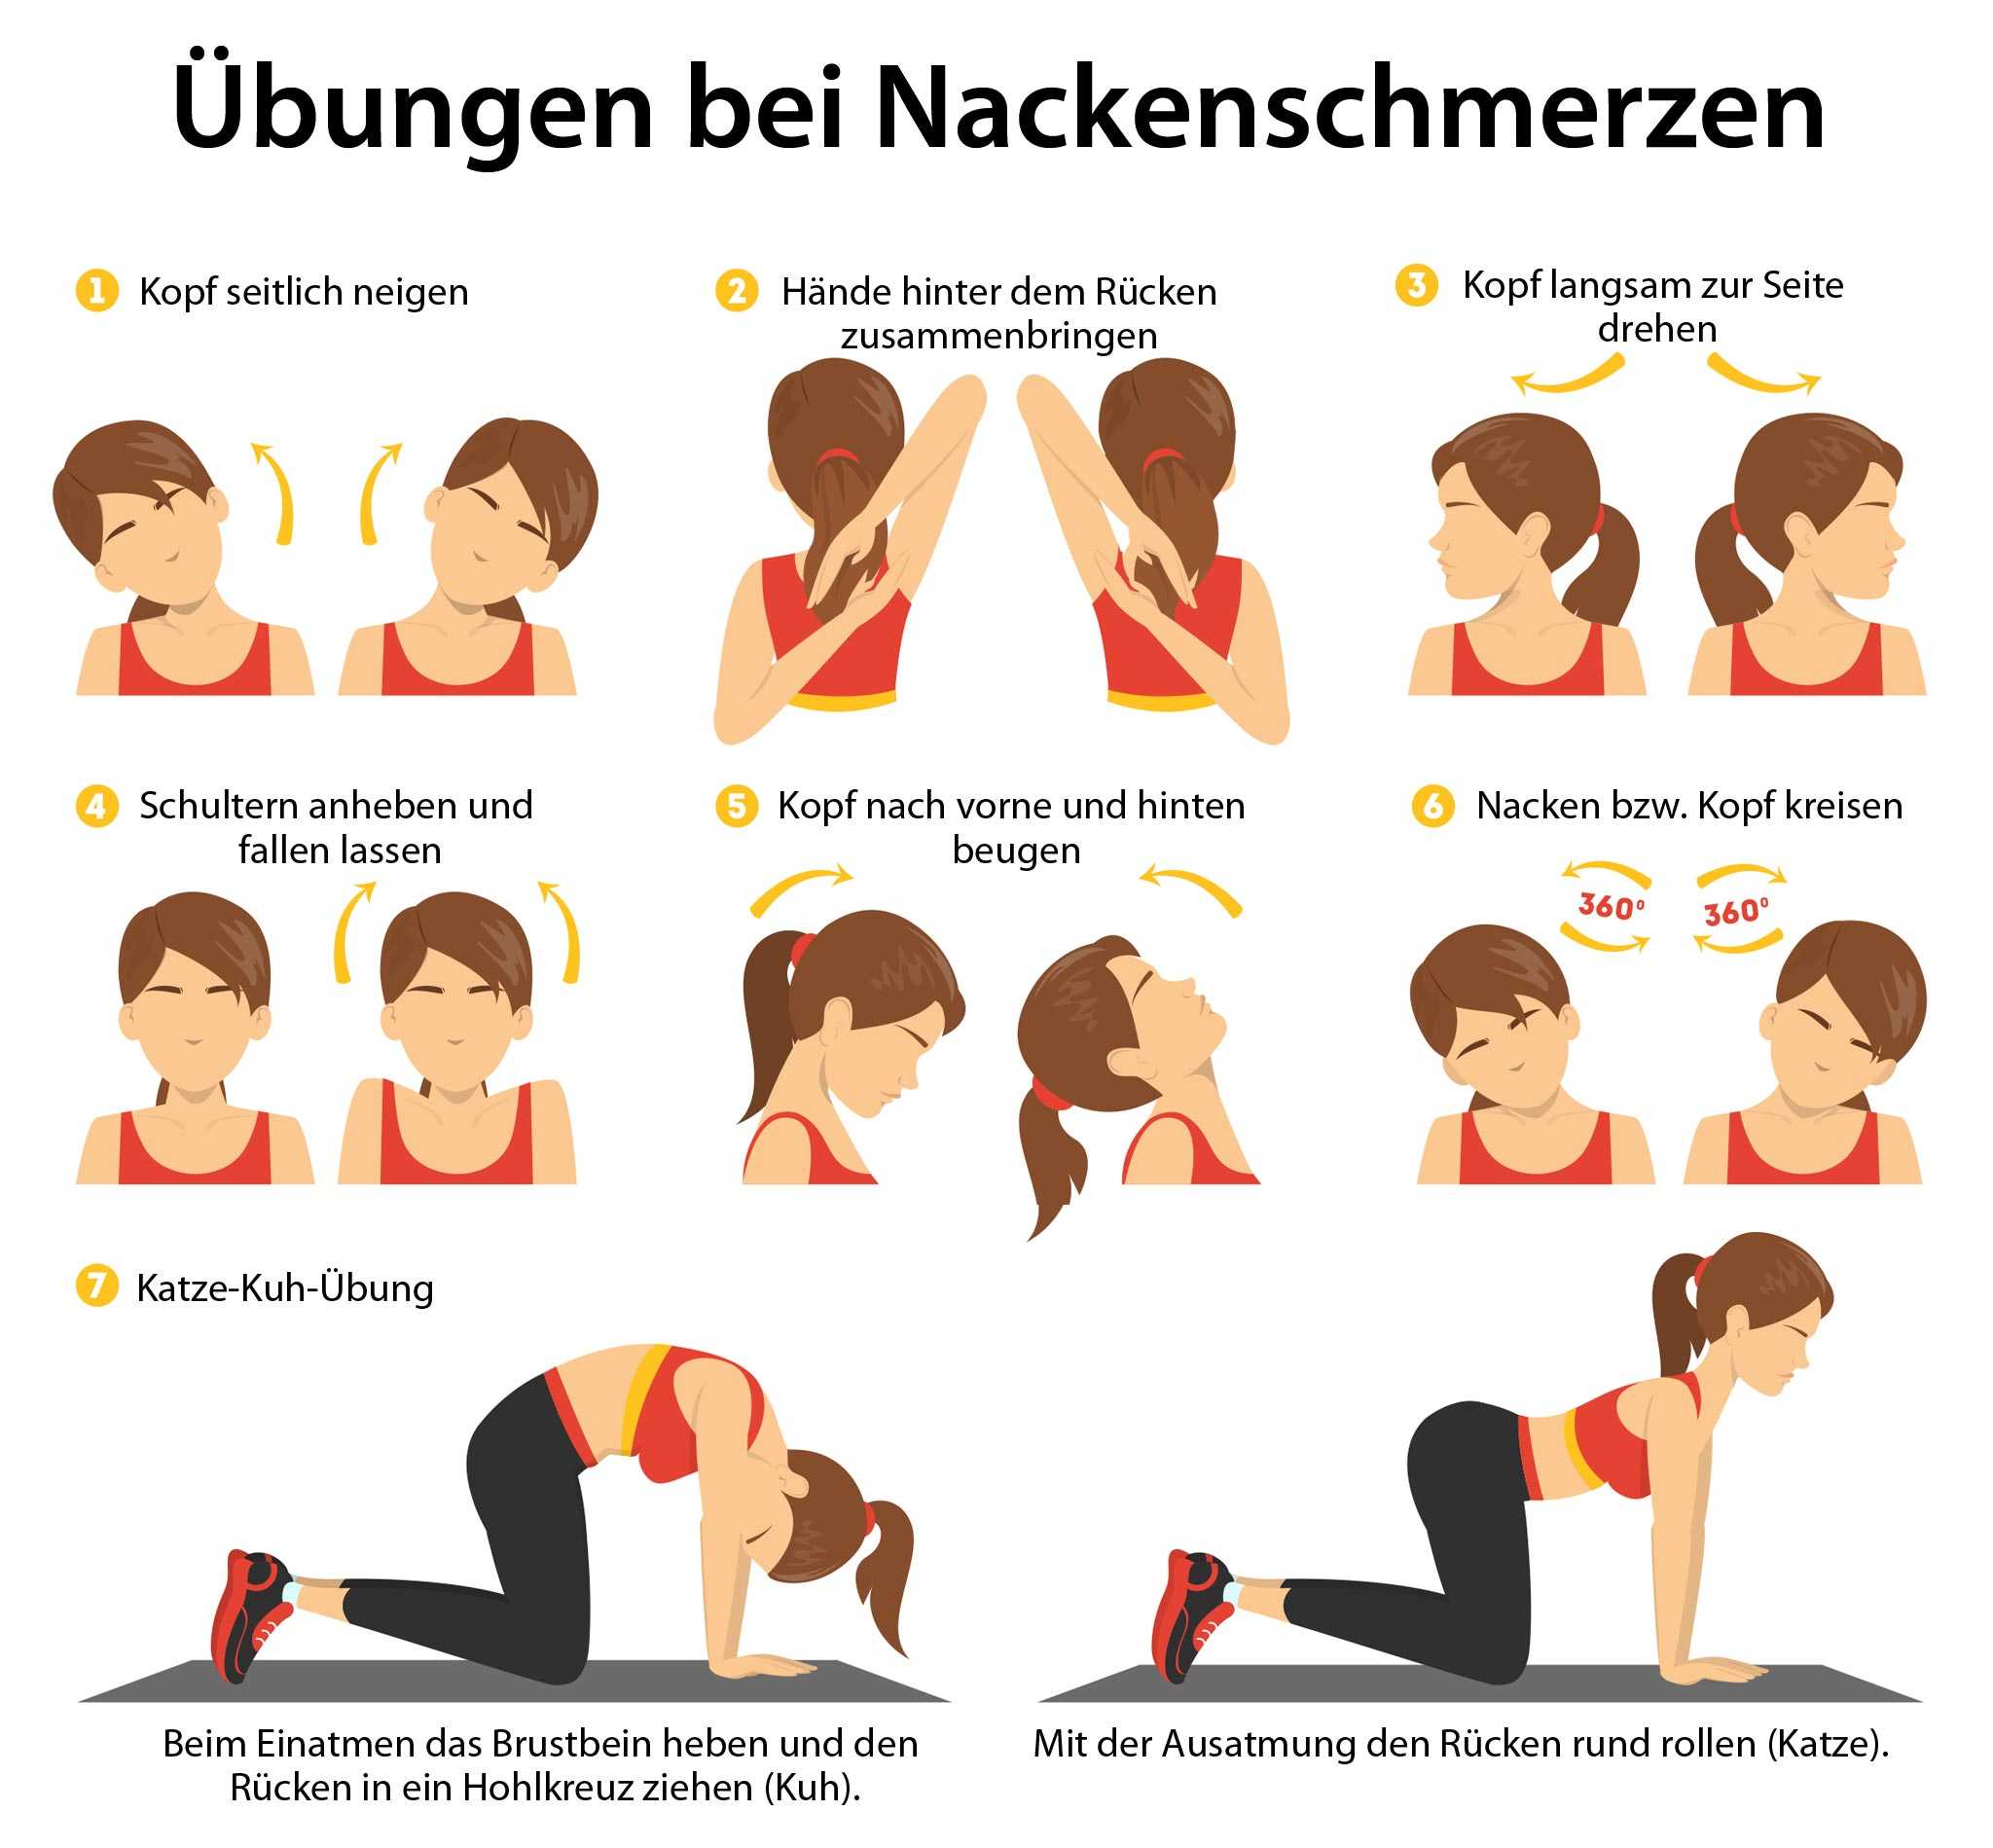 Nackenschmerzen - Übungen & was Sie sonst noch tun können